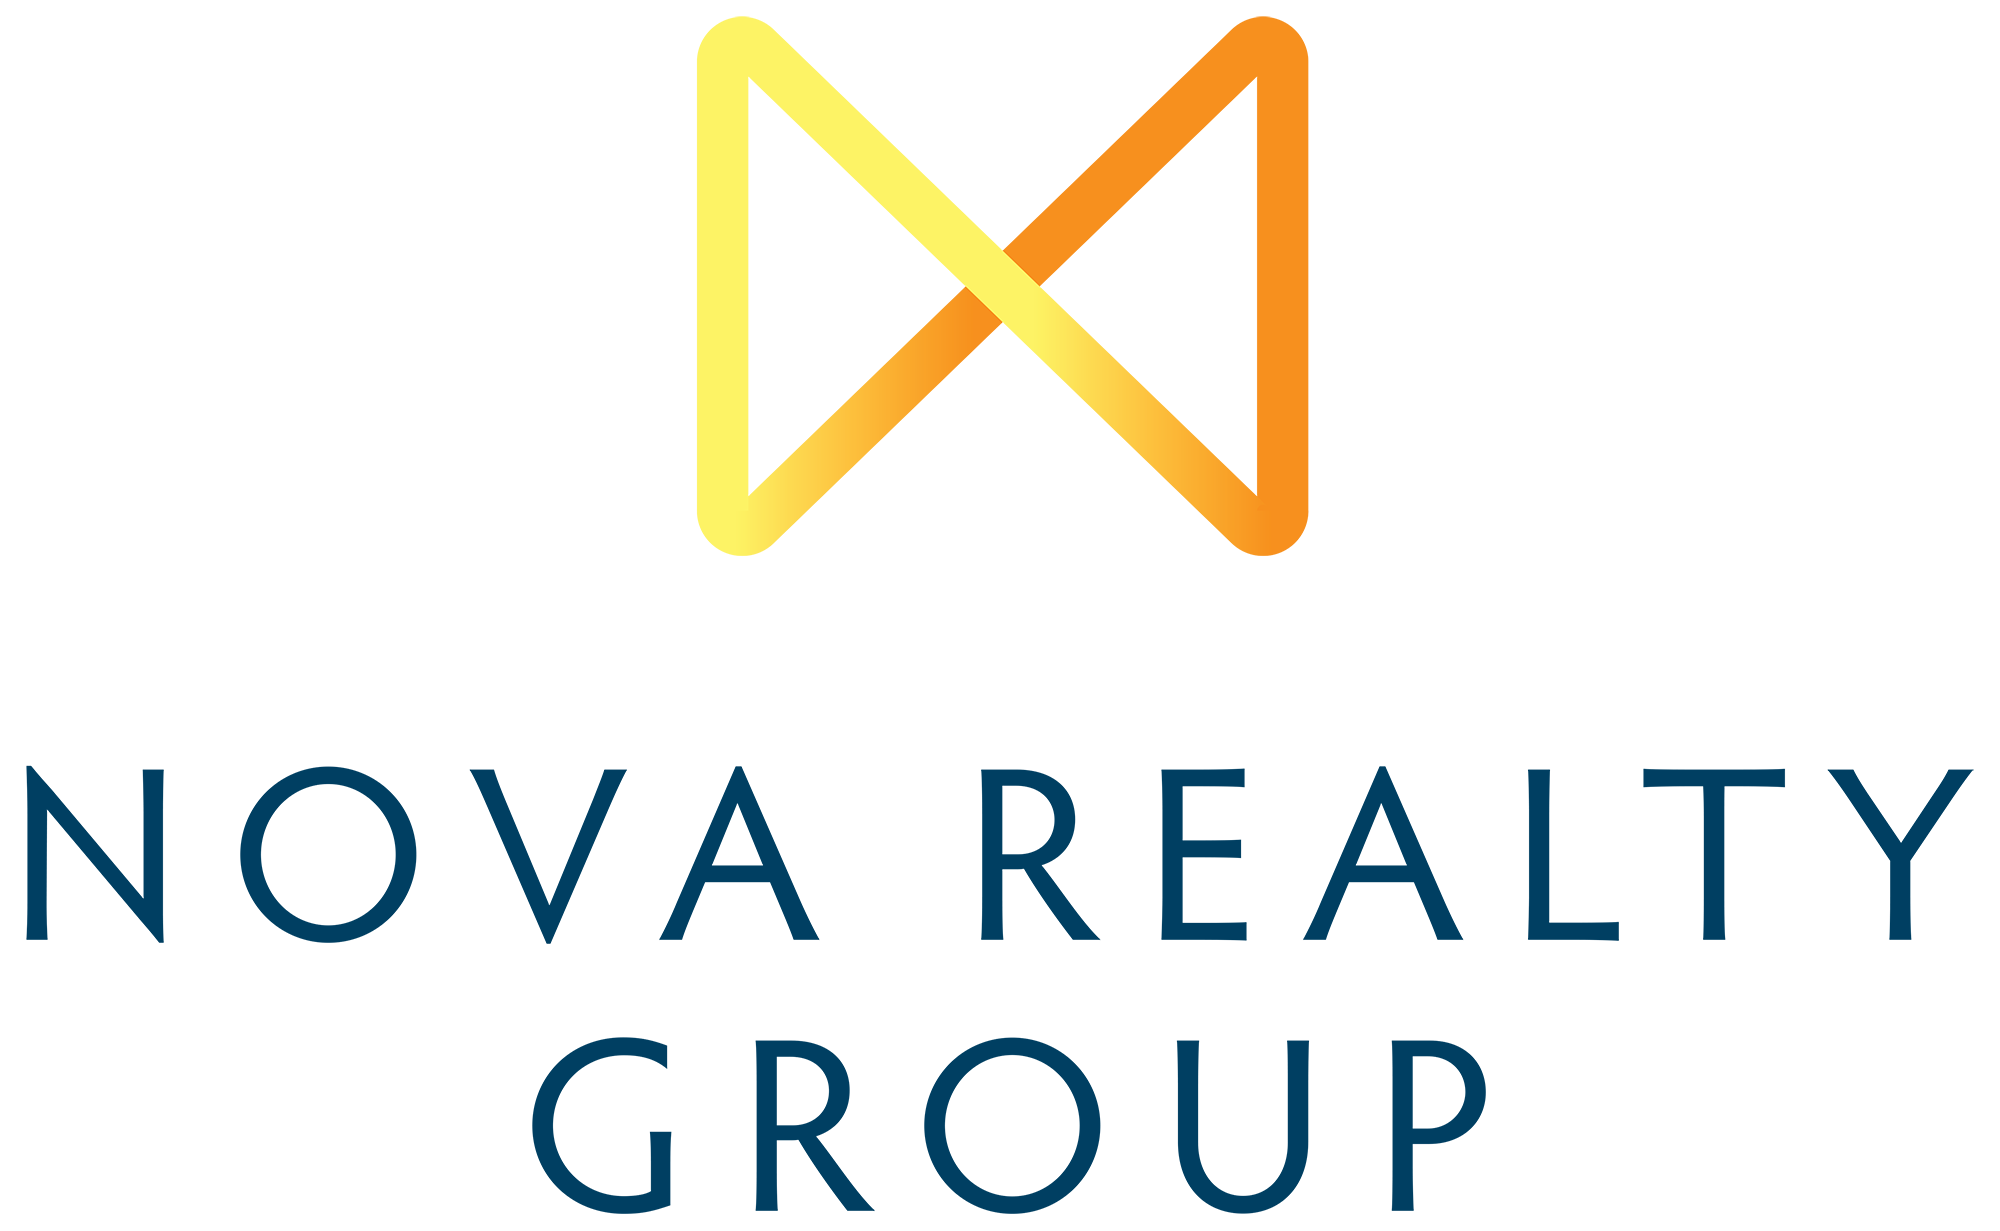 Nova Realty Group